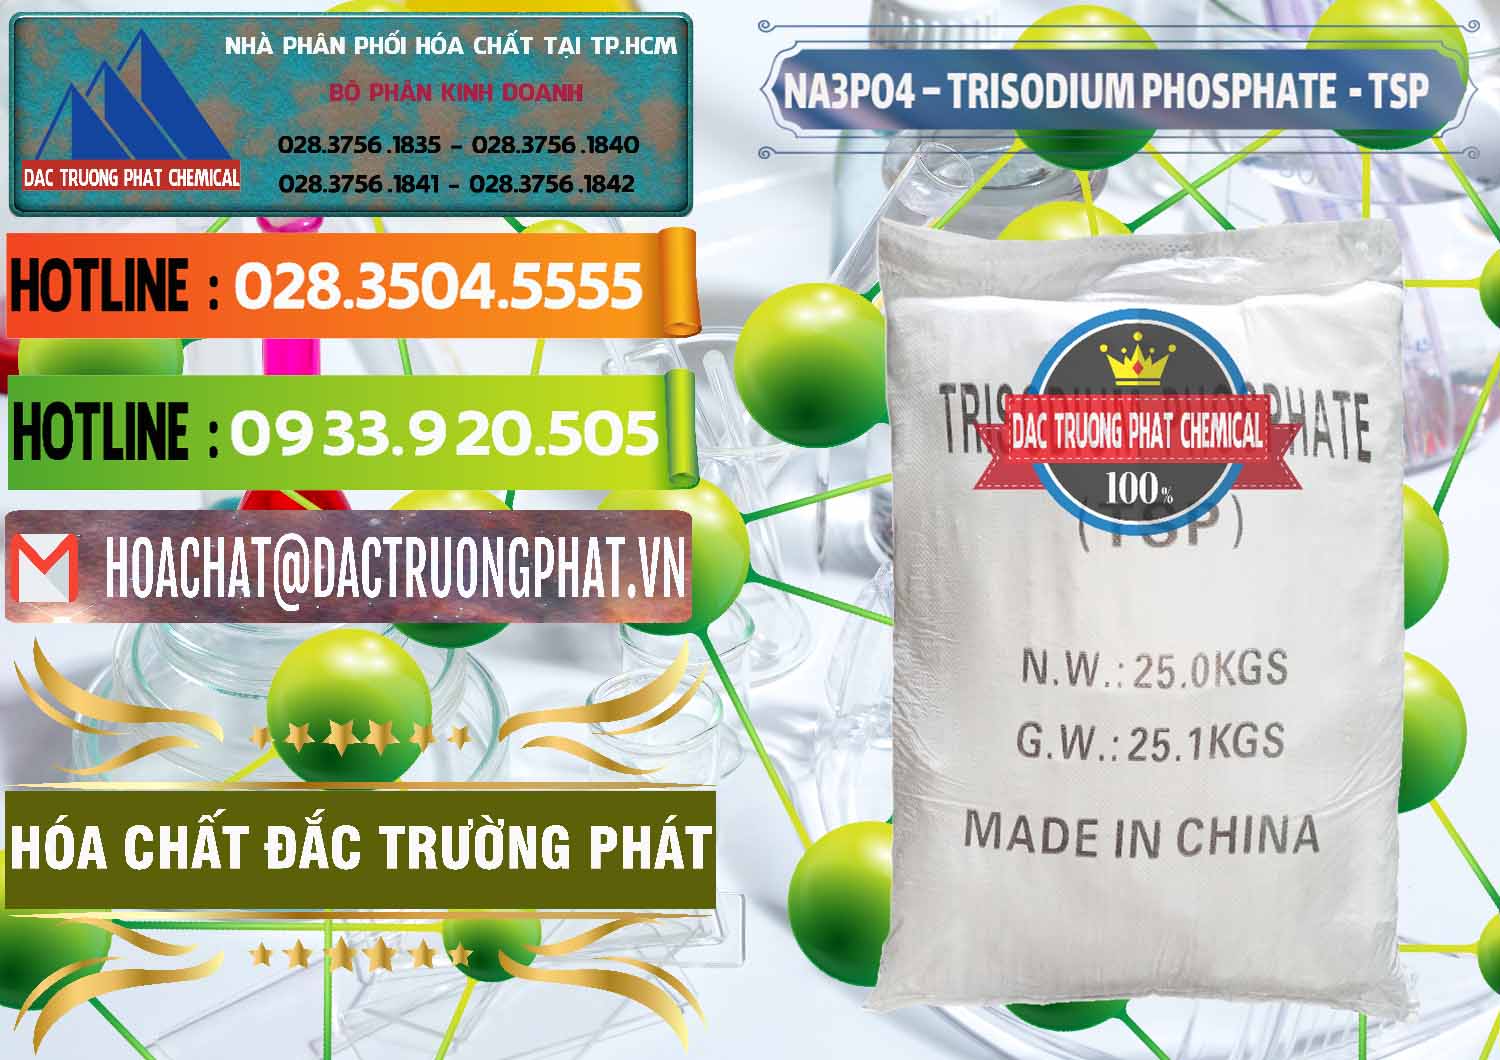 Cty nhập khẩu và bán Na3PO4 – Trisodium Phosphate Trung Quốc China TSP - 0103 - Đơn vị chuyên cung cấp & nhập khẩu hóa chất tại TP.HCM - cungcaphoachat.com.vn